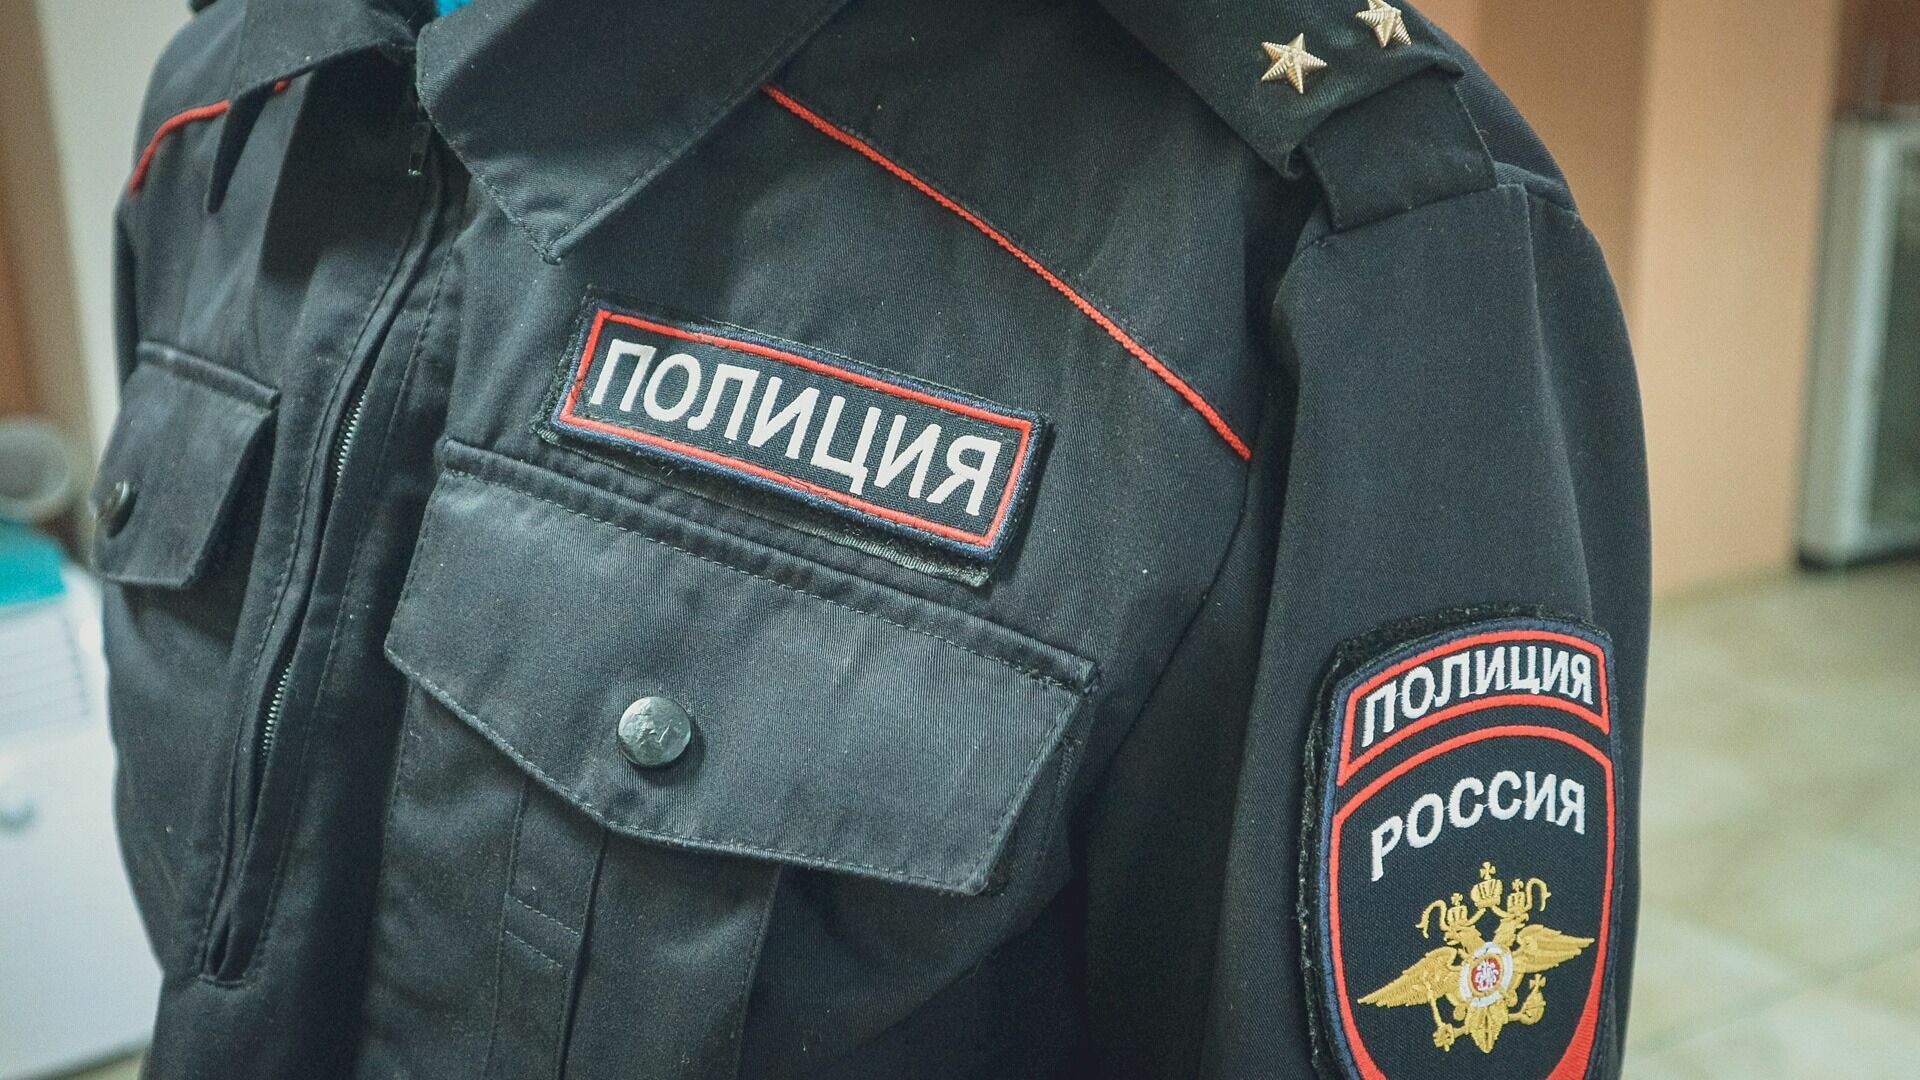 Вышел покурить: пропавшего в октябре мужчину нашли мертвым в Волгограде